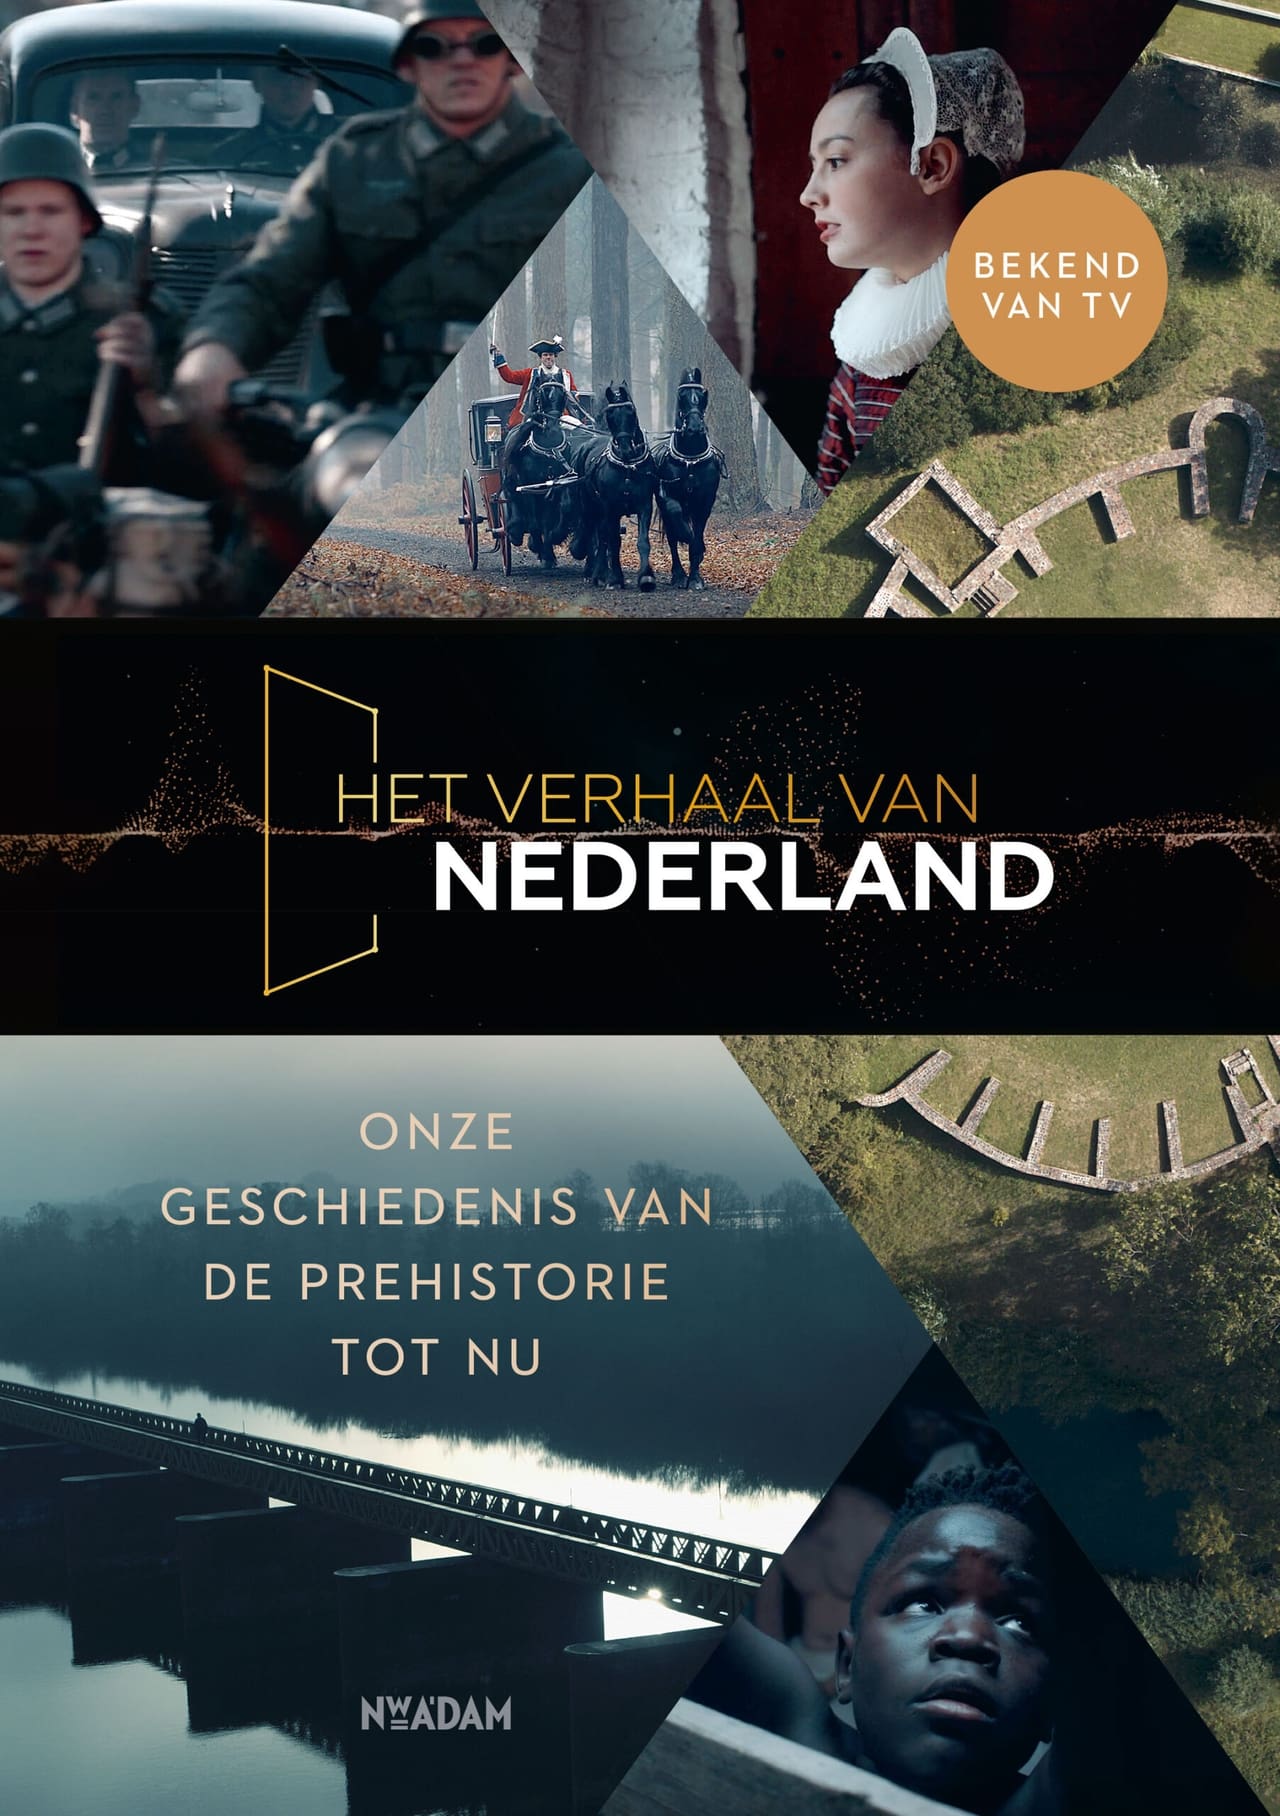 Het verhaal van Nederland (Hardcover, Dutch language, 2022, Nieuw Amsterdam)